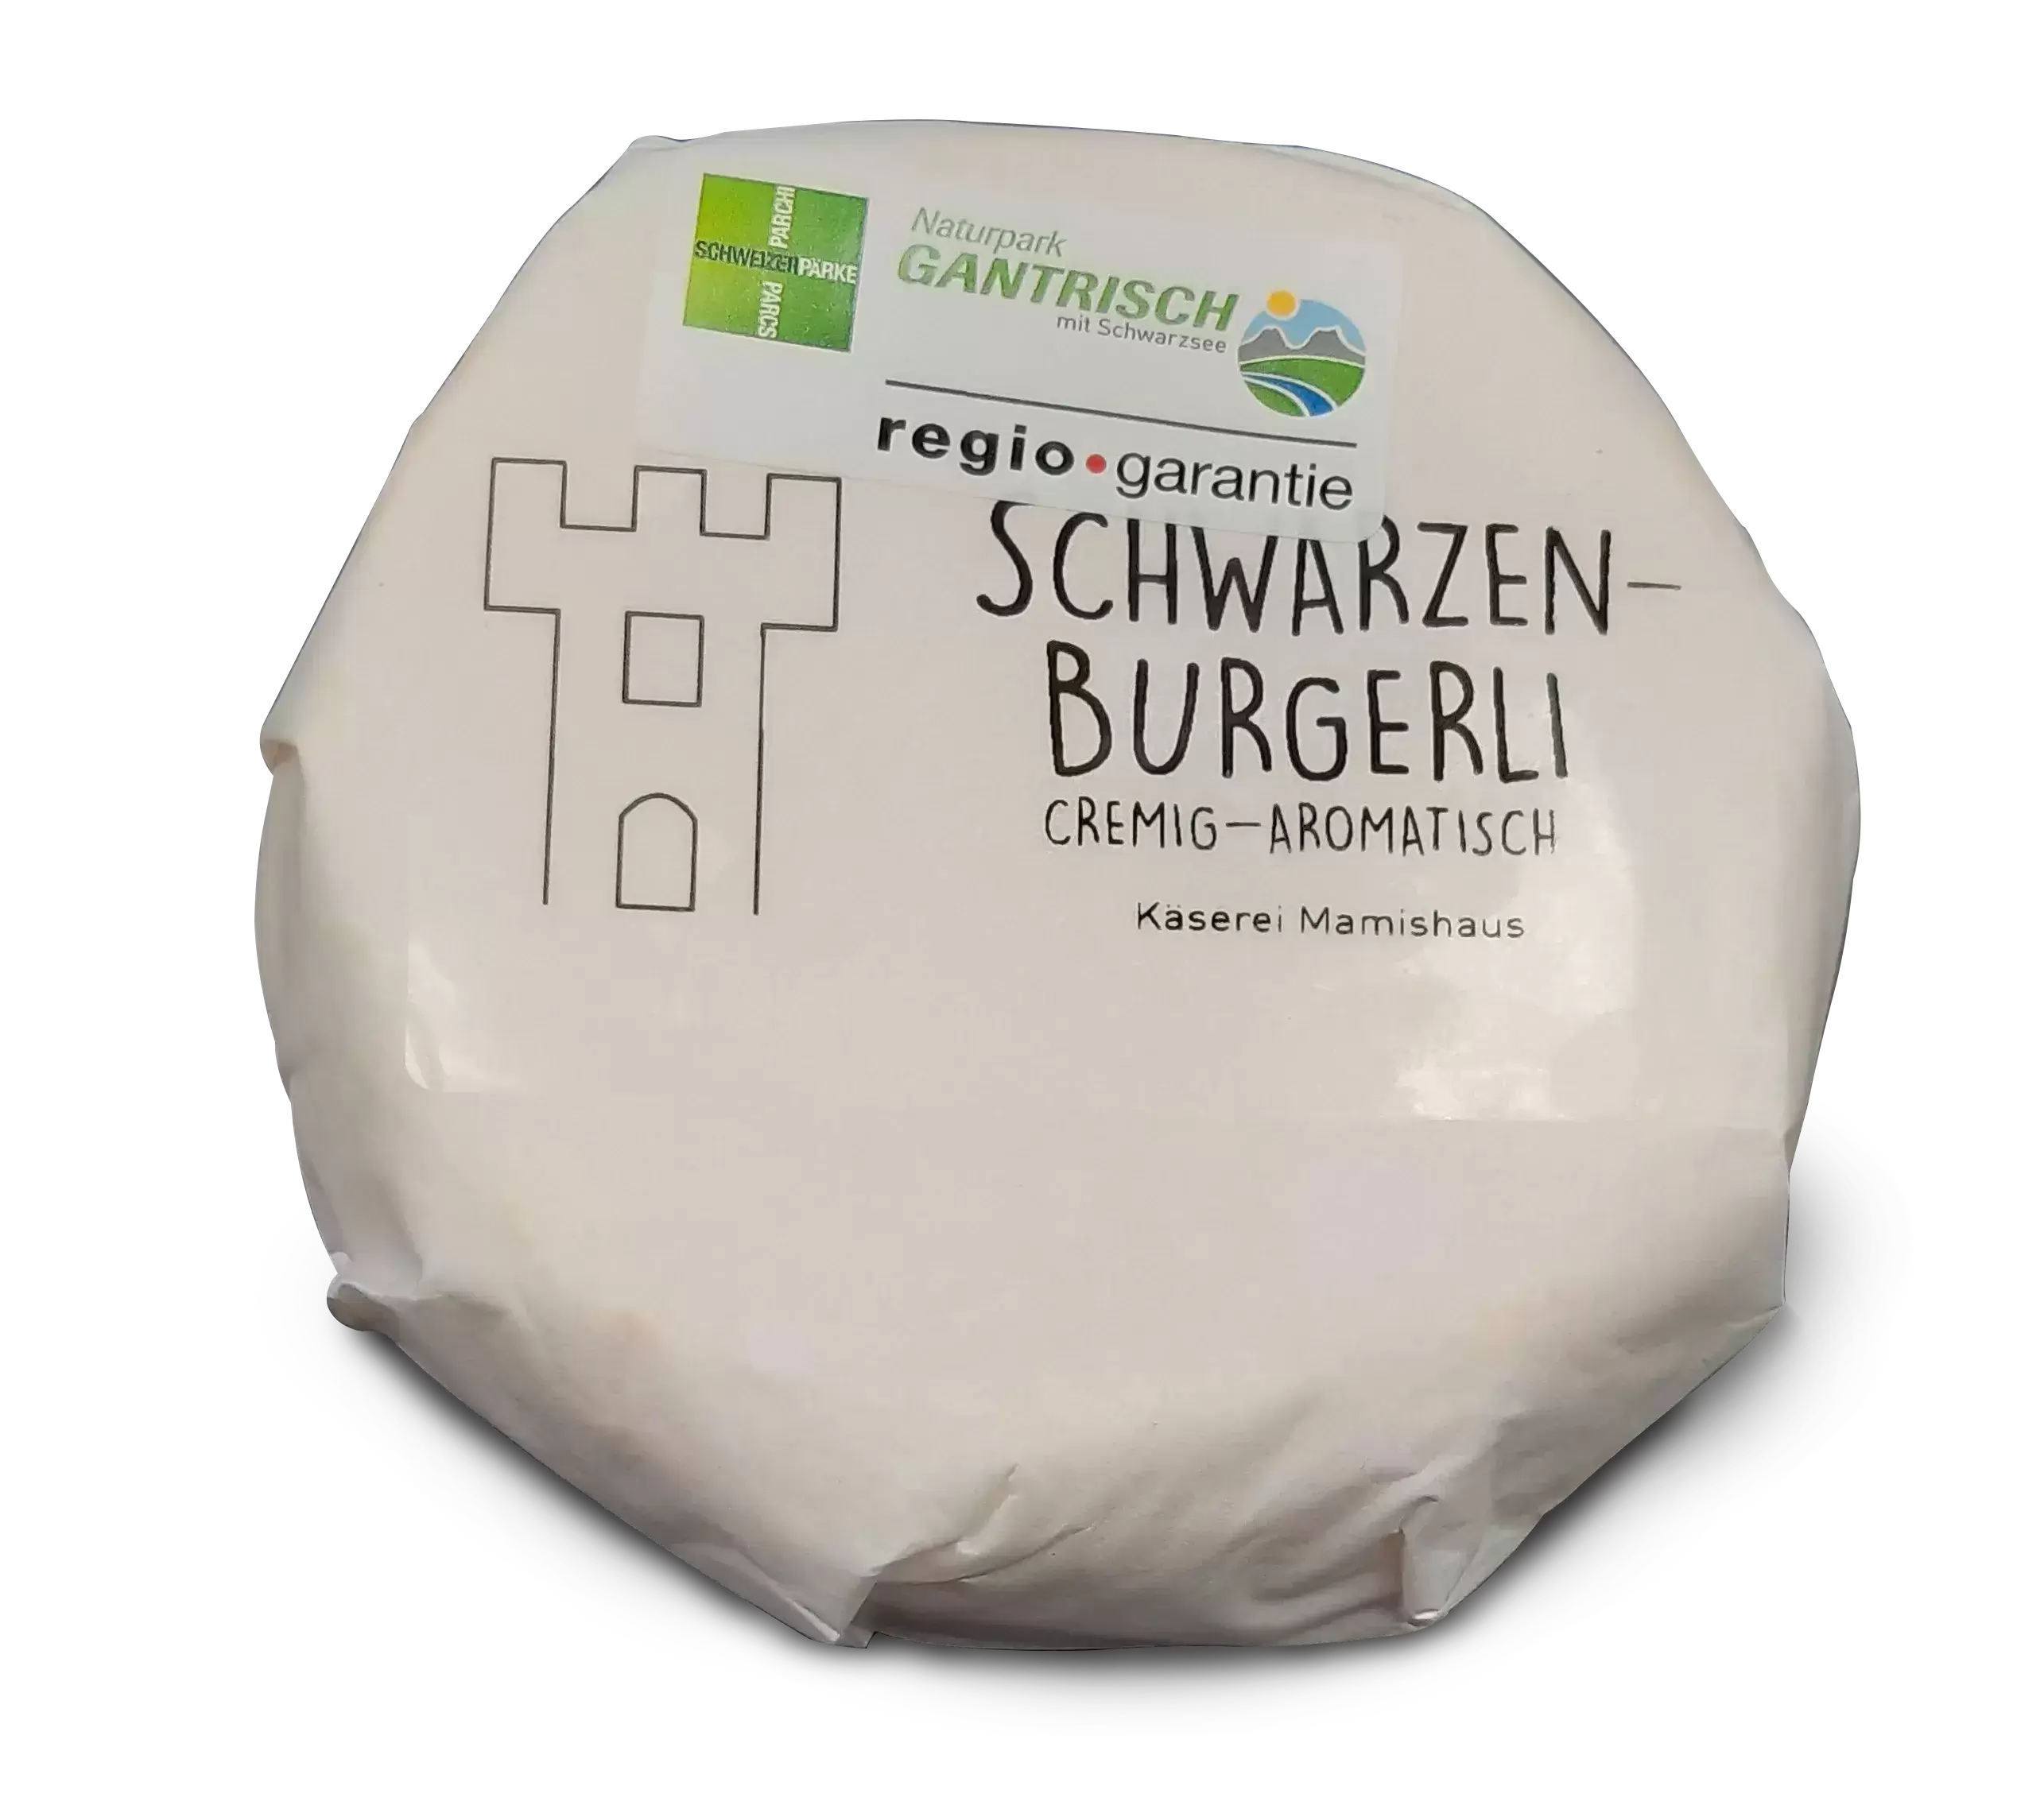 Schwarzenburgerli